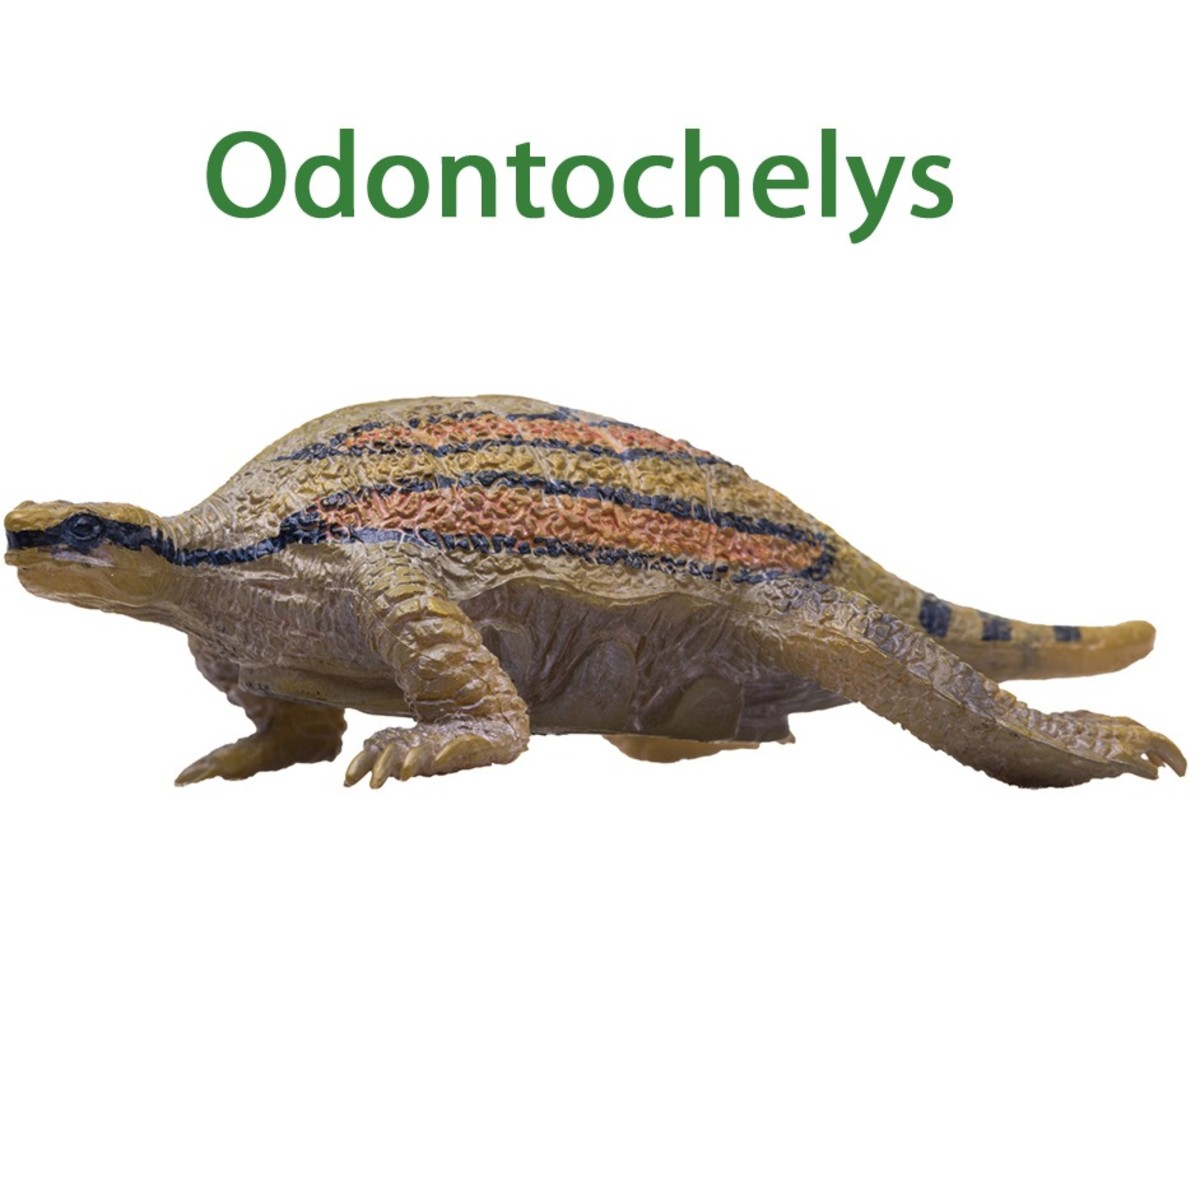 Odontochelys